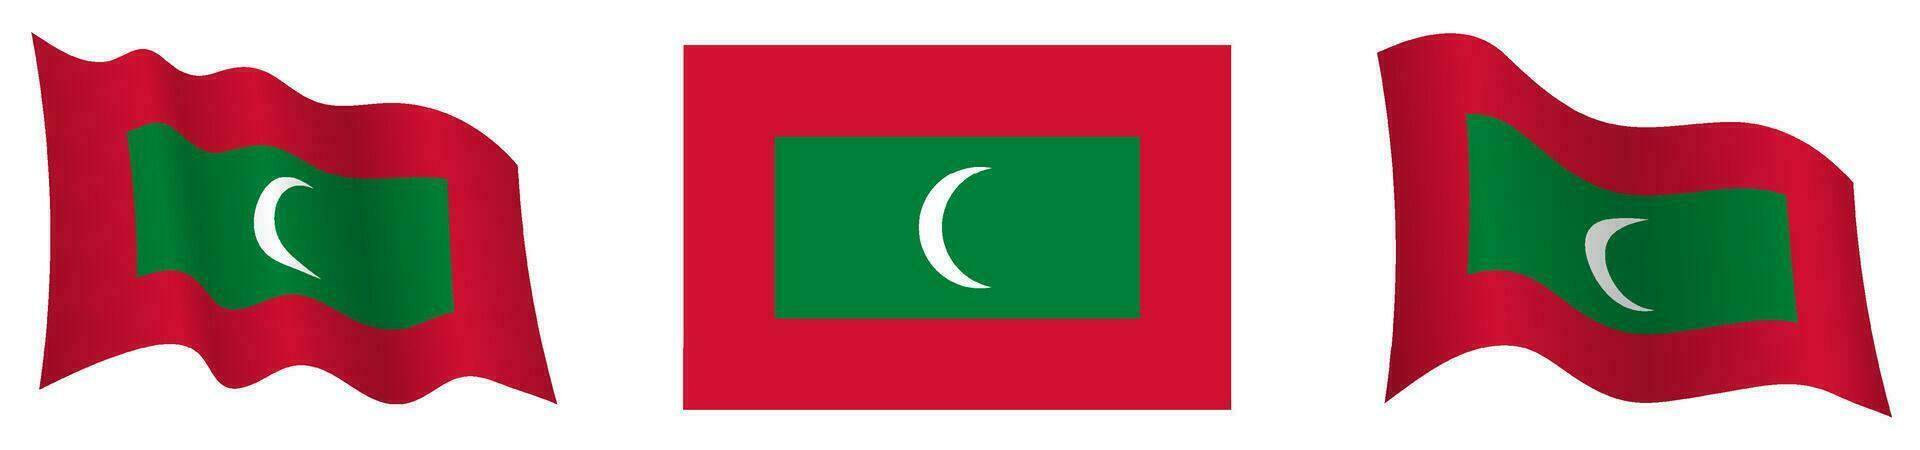 flagga av maldiverna i statisk placera och i rörelse, fladdrande i vind i exakt färger och storlekar, på vit bakgrund vektor